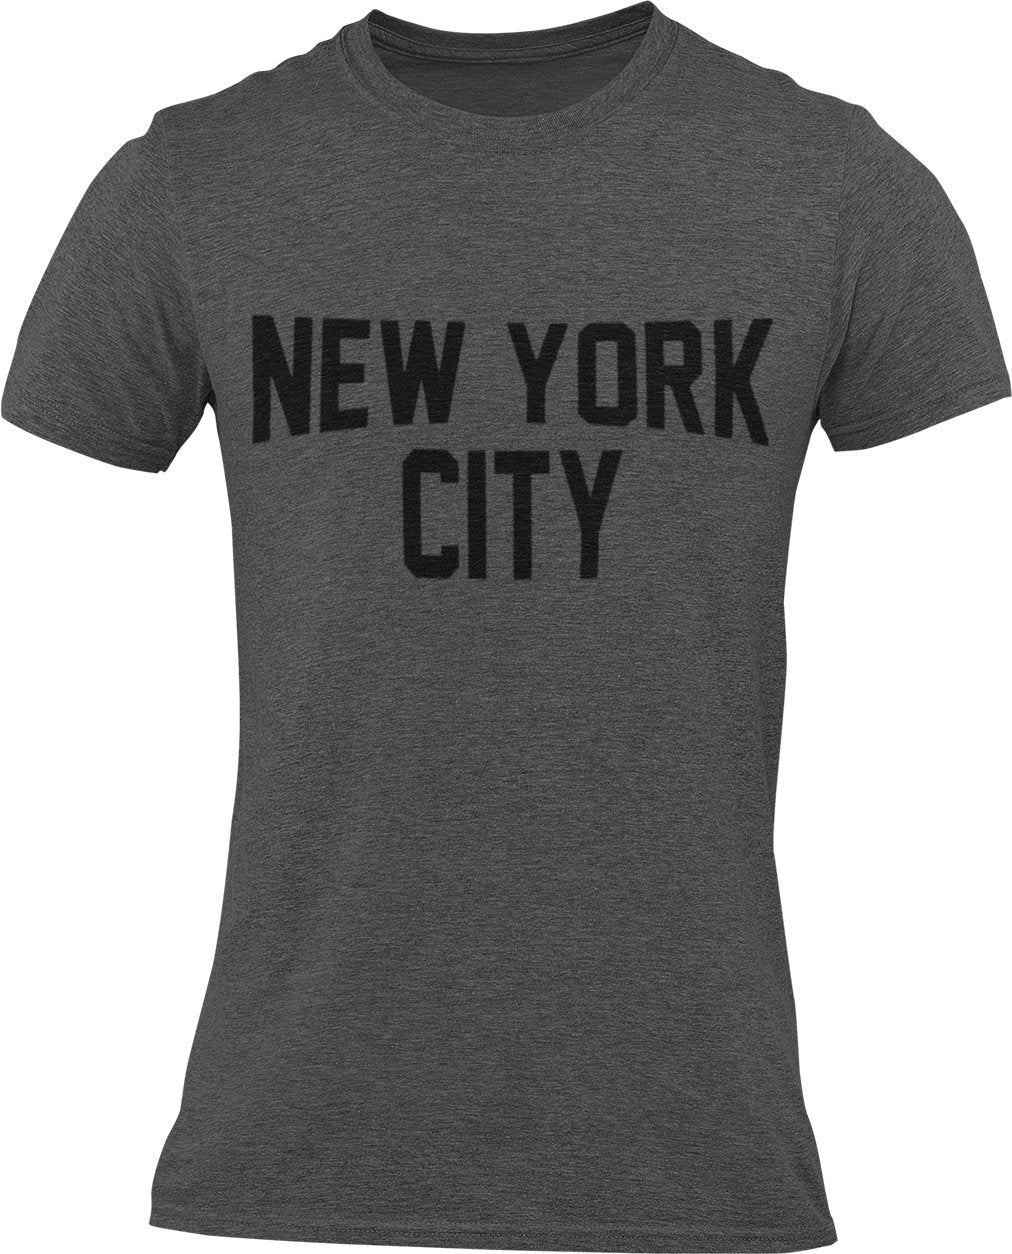 New York City Unisex T-Shirt Lennon T-Shirt mit Siebdruck in Dark Heather Charcoal